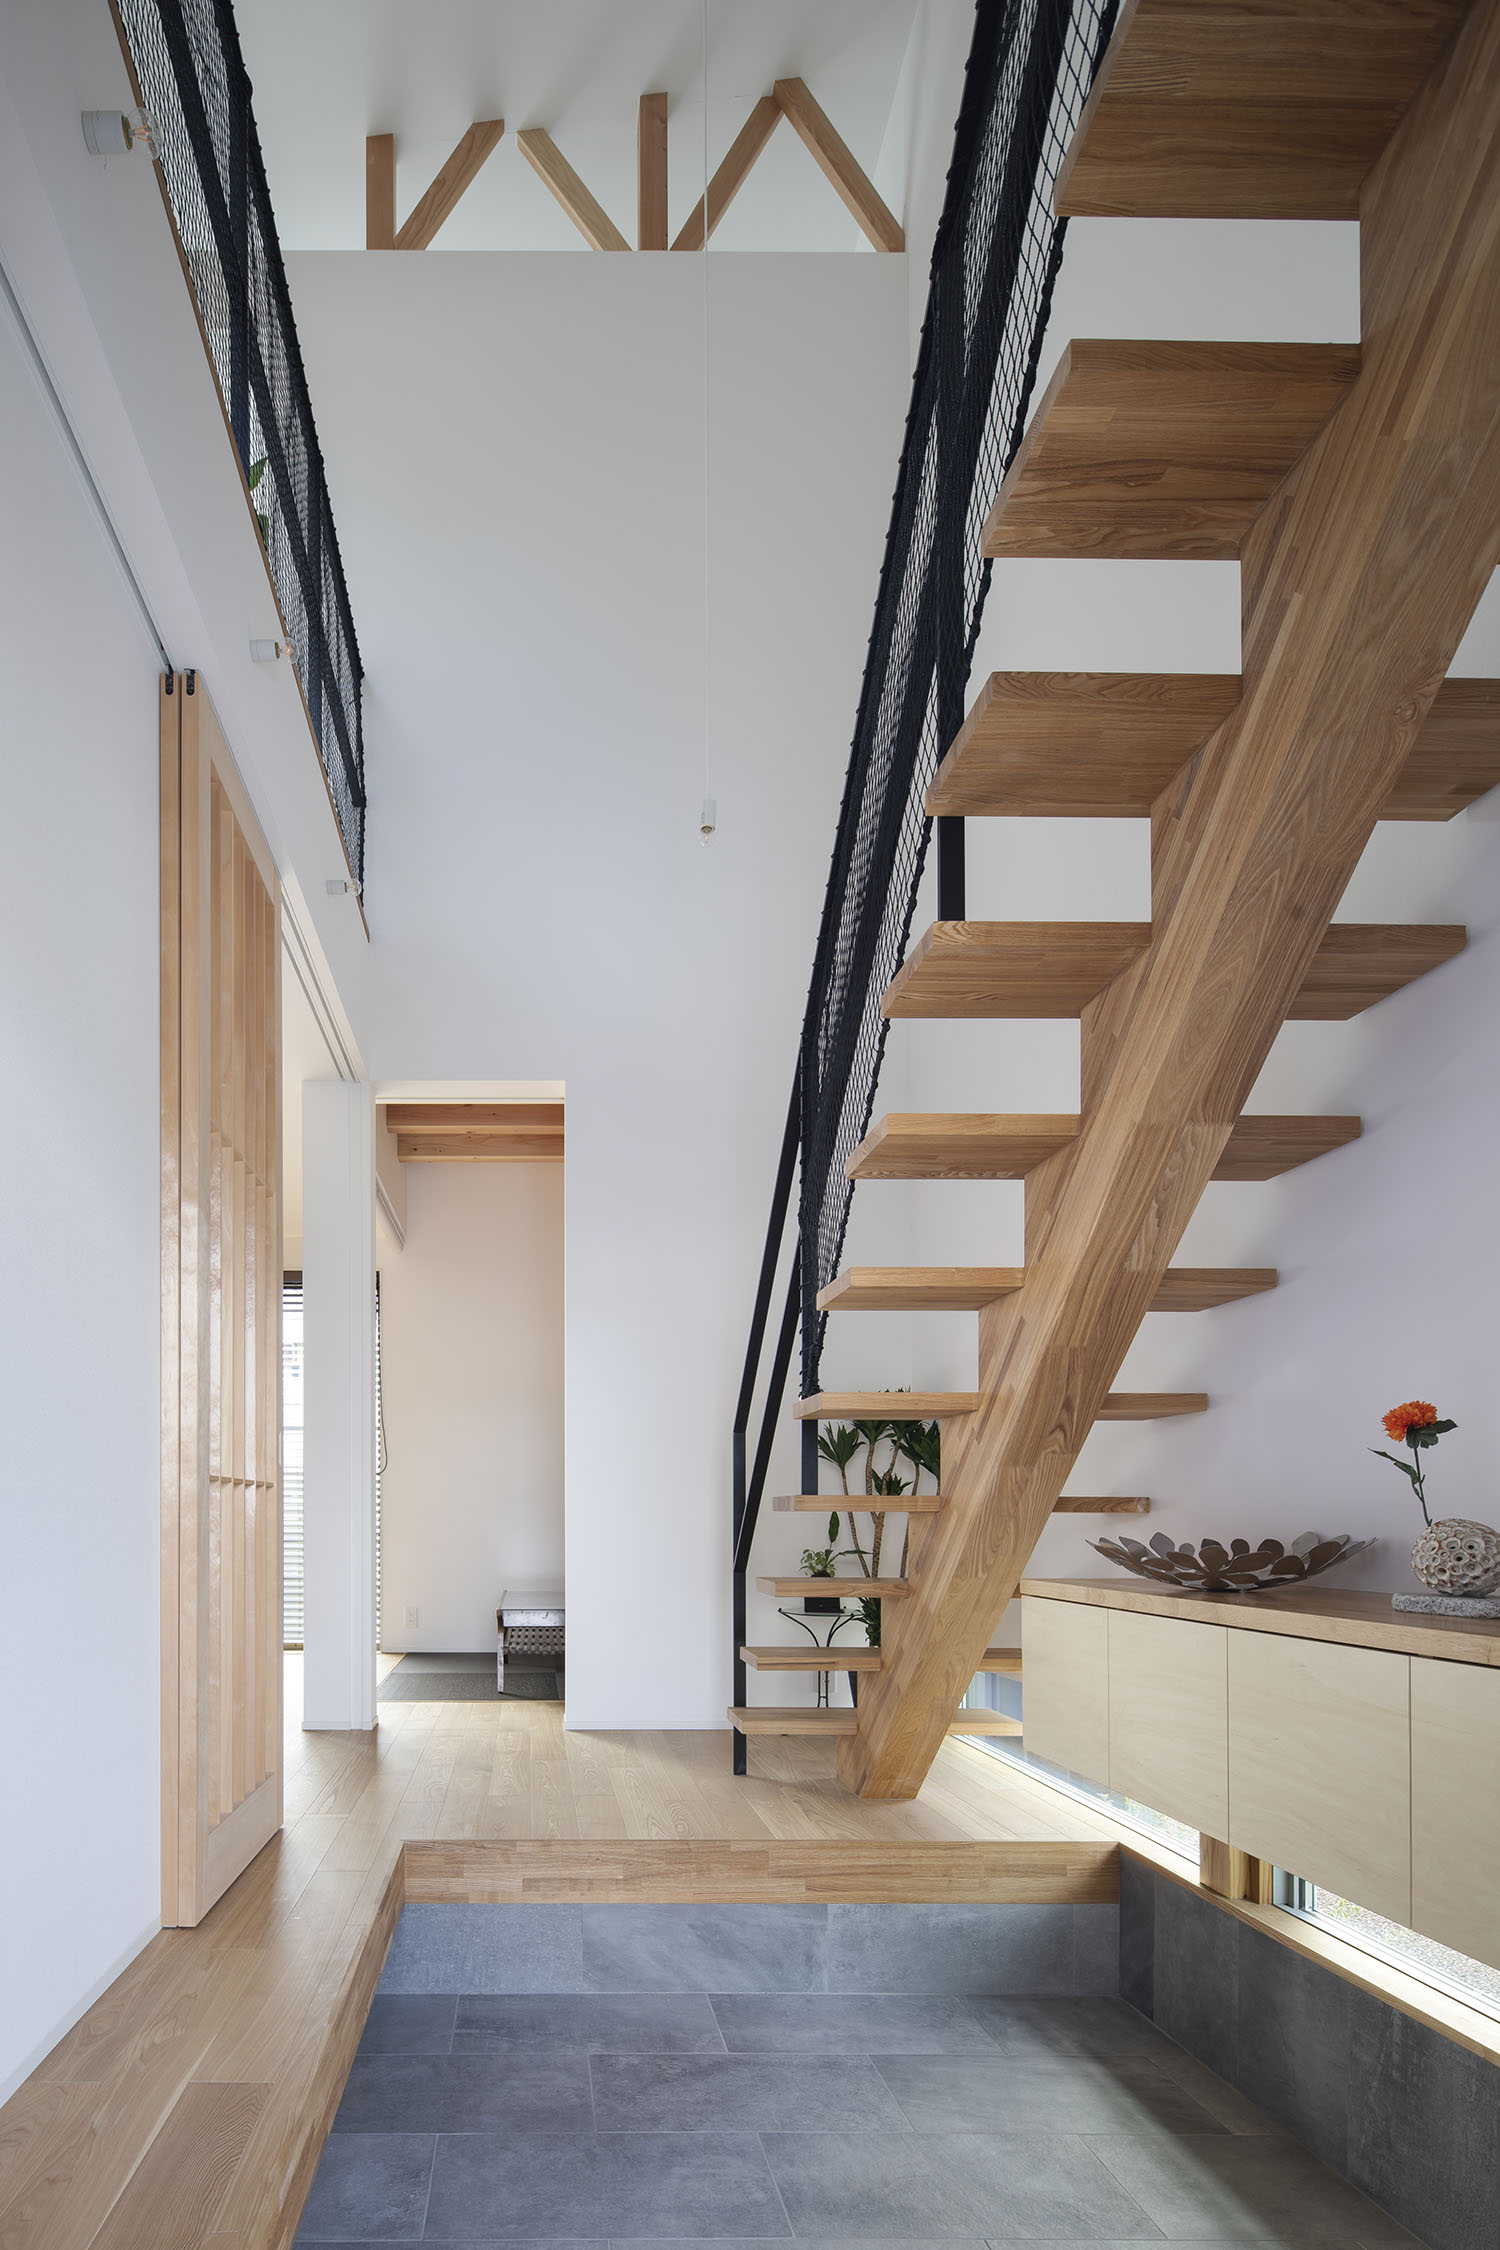 吹き抜けの玄関を横切るように木製のスケルトン階段がある様子・デザイン住宅